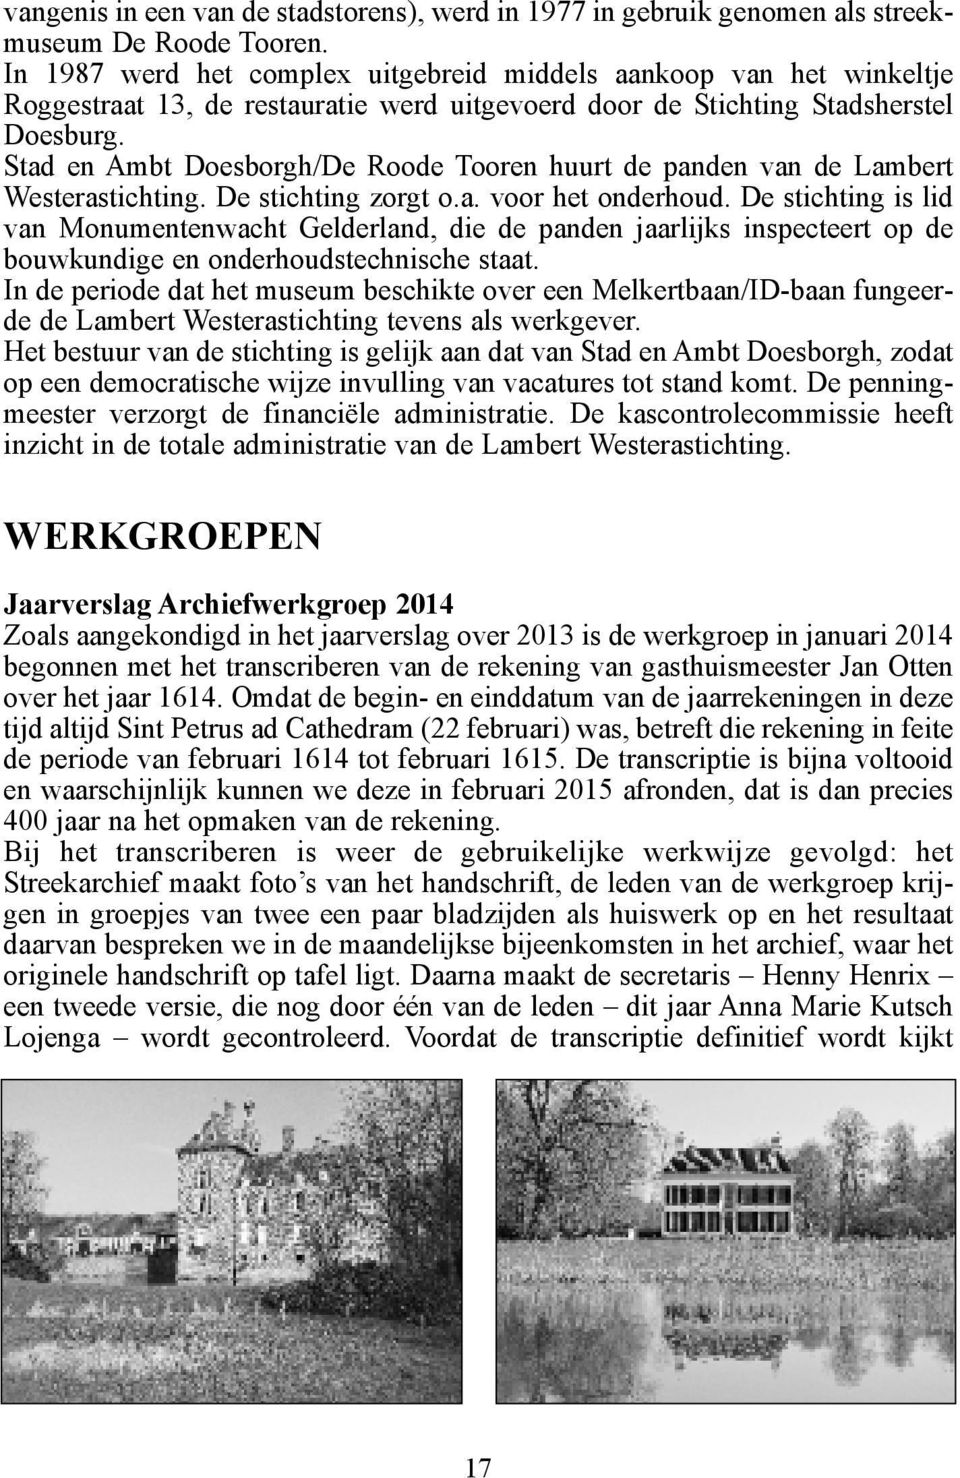 Stad en Ambt Doesborgh/De Roode Tooren huurt de panden van de Lambert Westerastichting. De stichting zorgt o.a. voor het onderhoud.